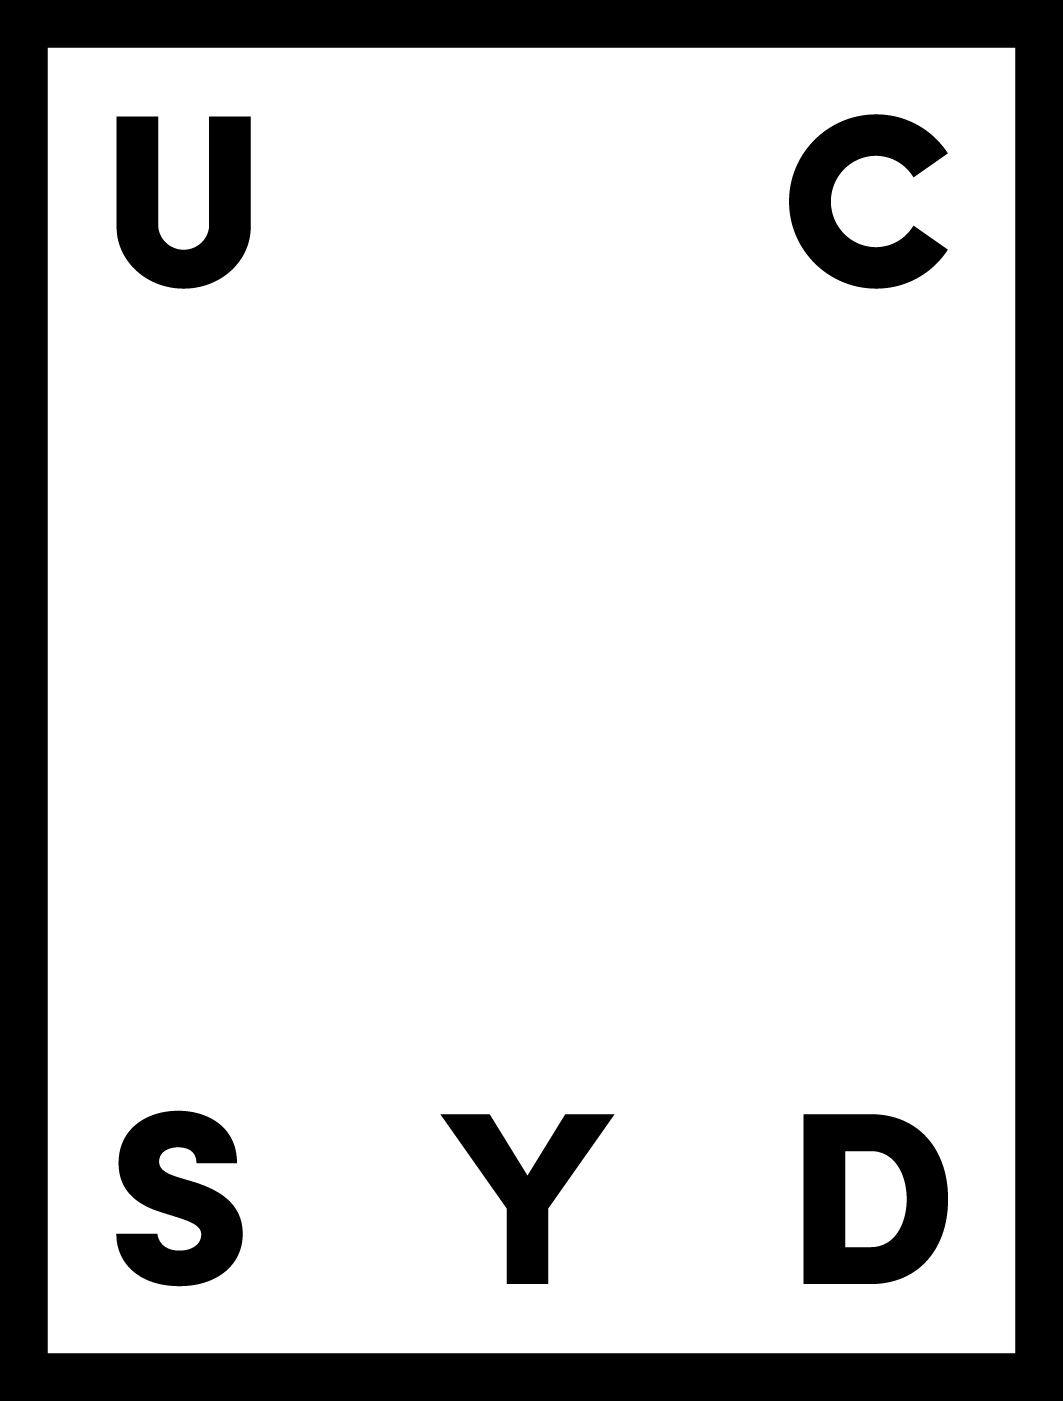 UC syd logo